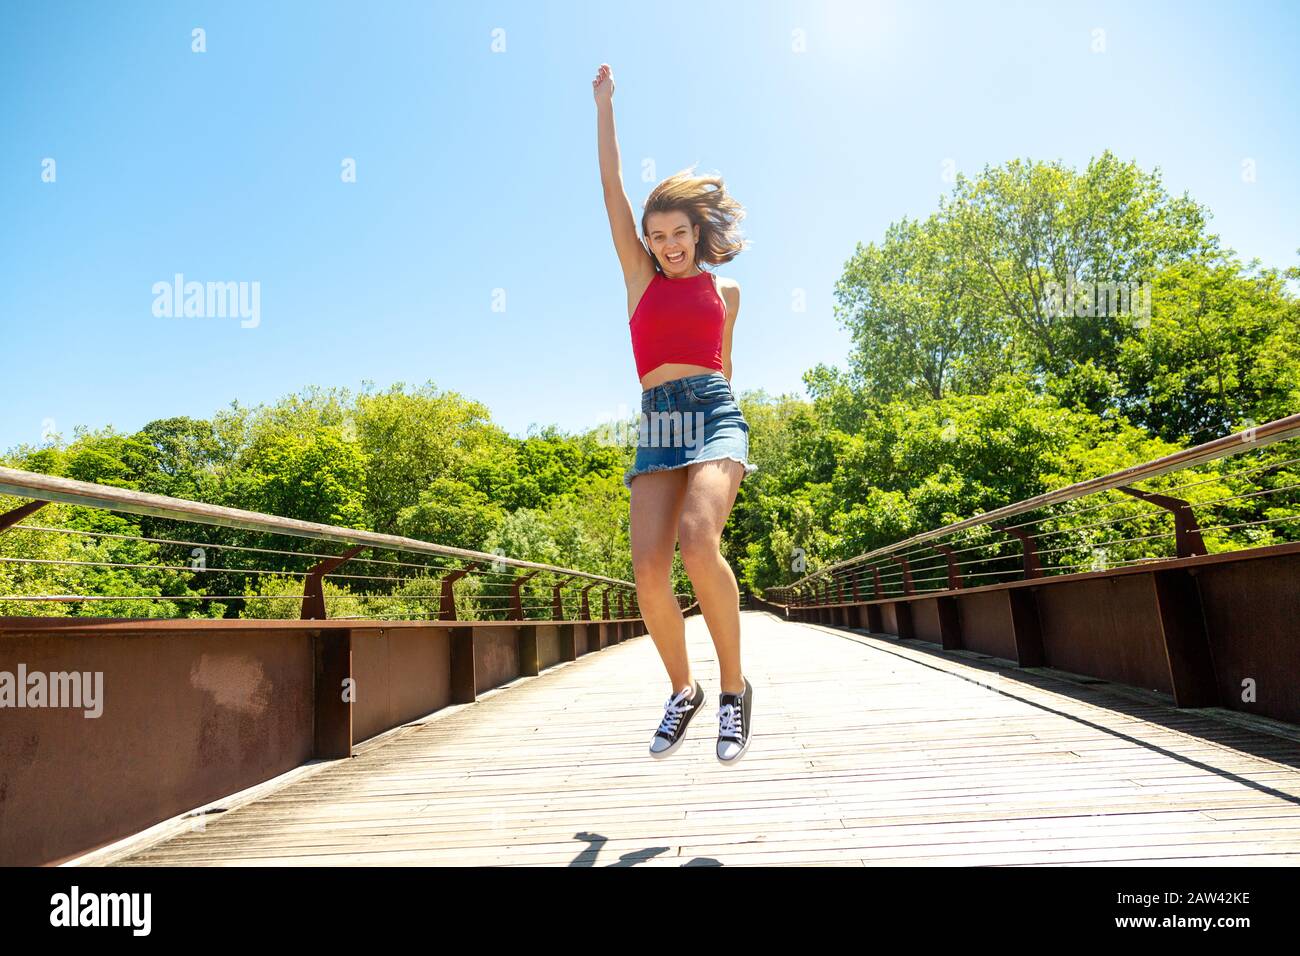 Fröhliche junge schöne Frau im roten Oberteil und Minirock, die an einem sonnigen Tag auf einer Brücke springt Stockfoto